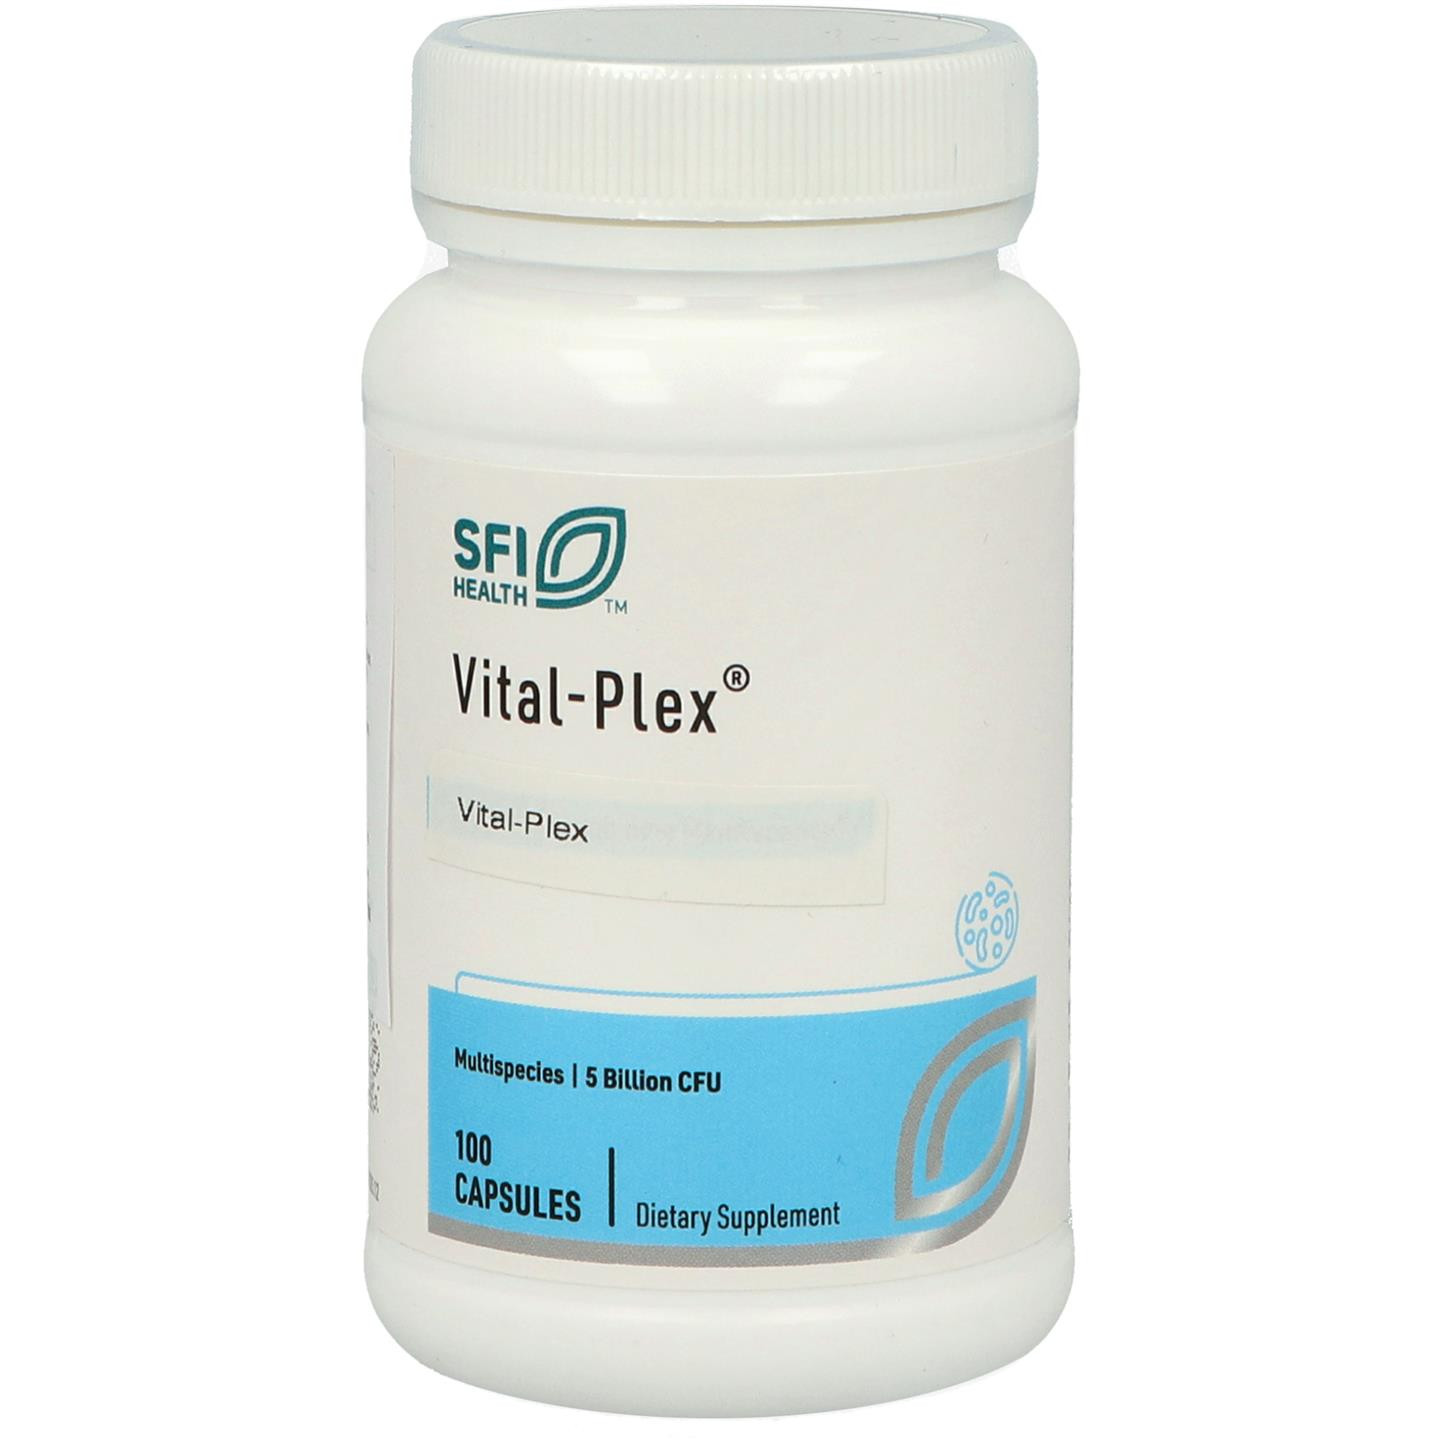 Vital-Plex